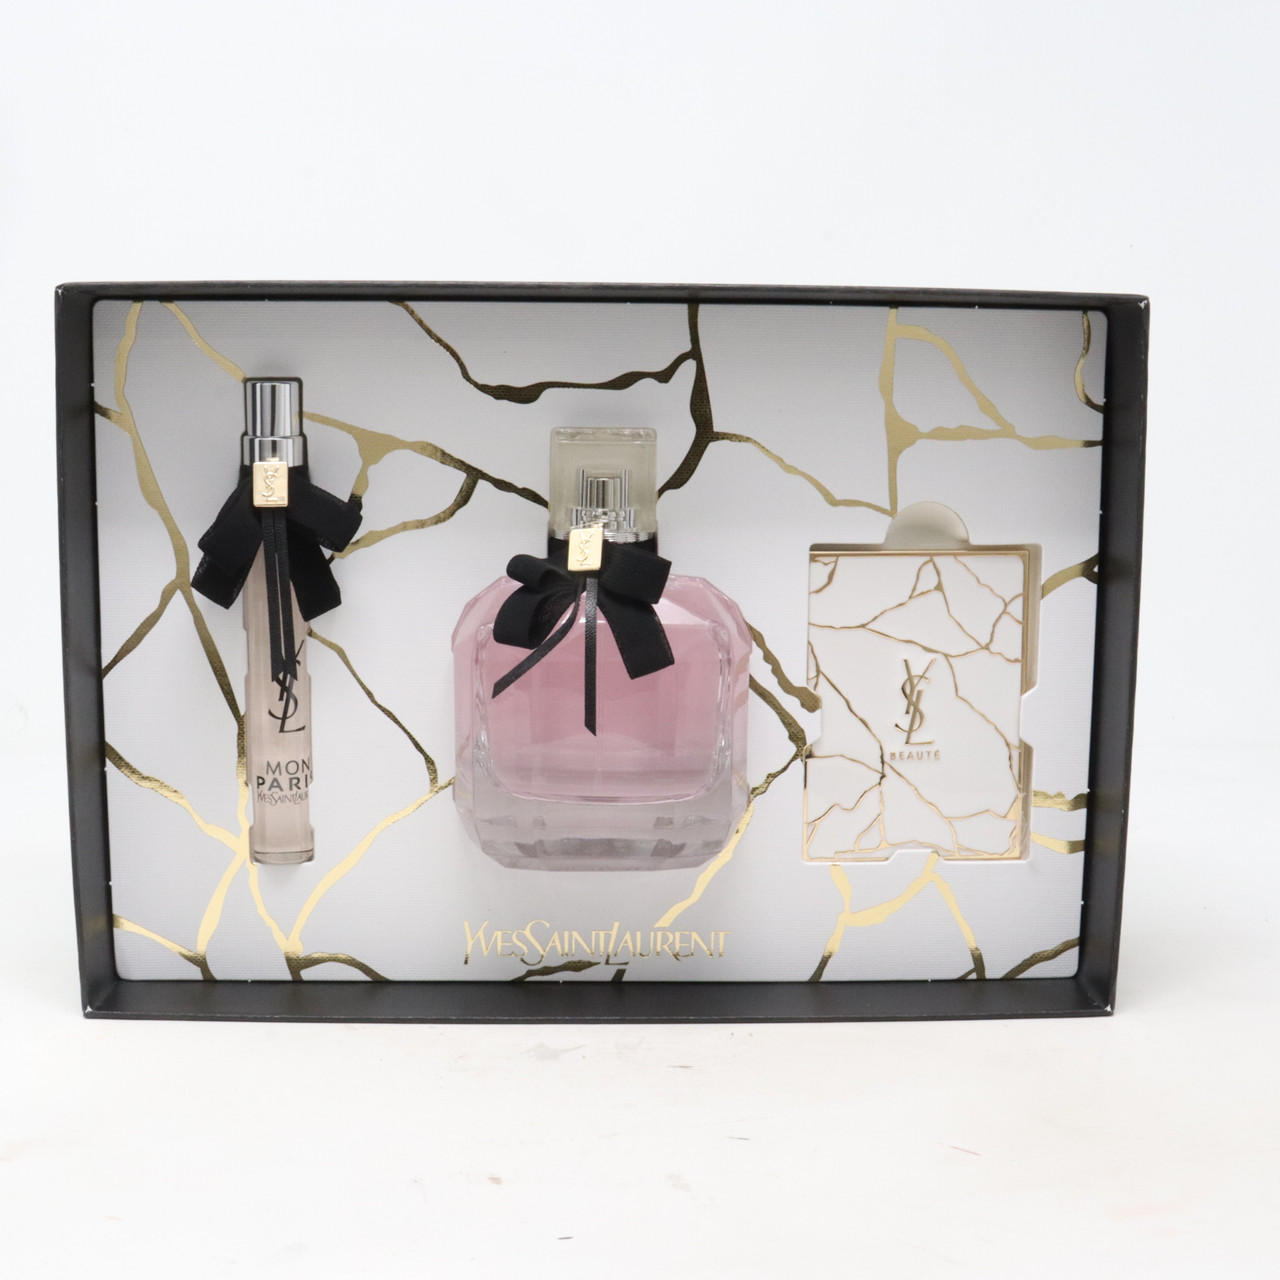 Yves Saint New Pcs 3- / With Set Paris Box Parfum De Laurent Mon Eau